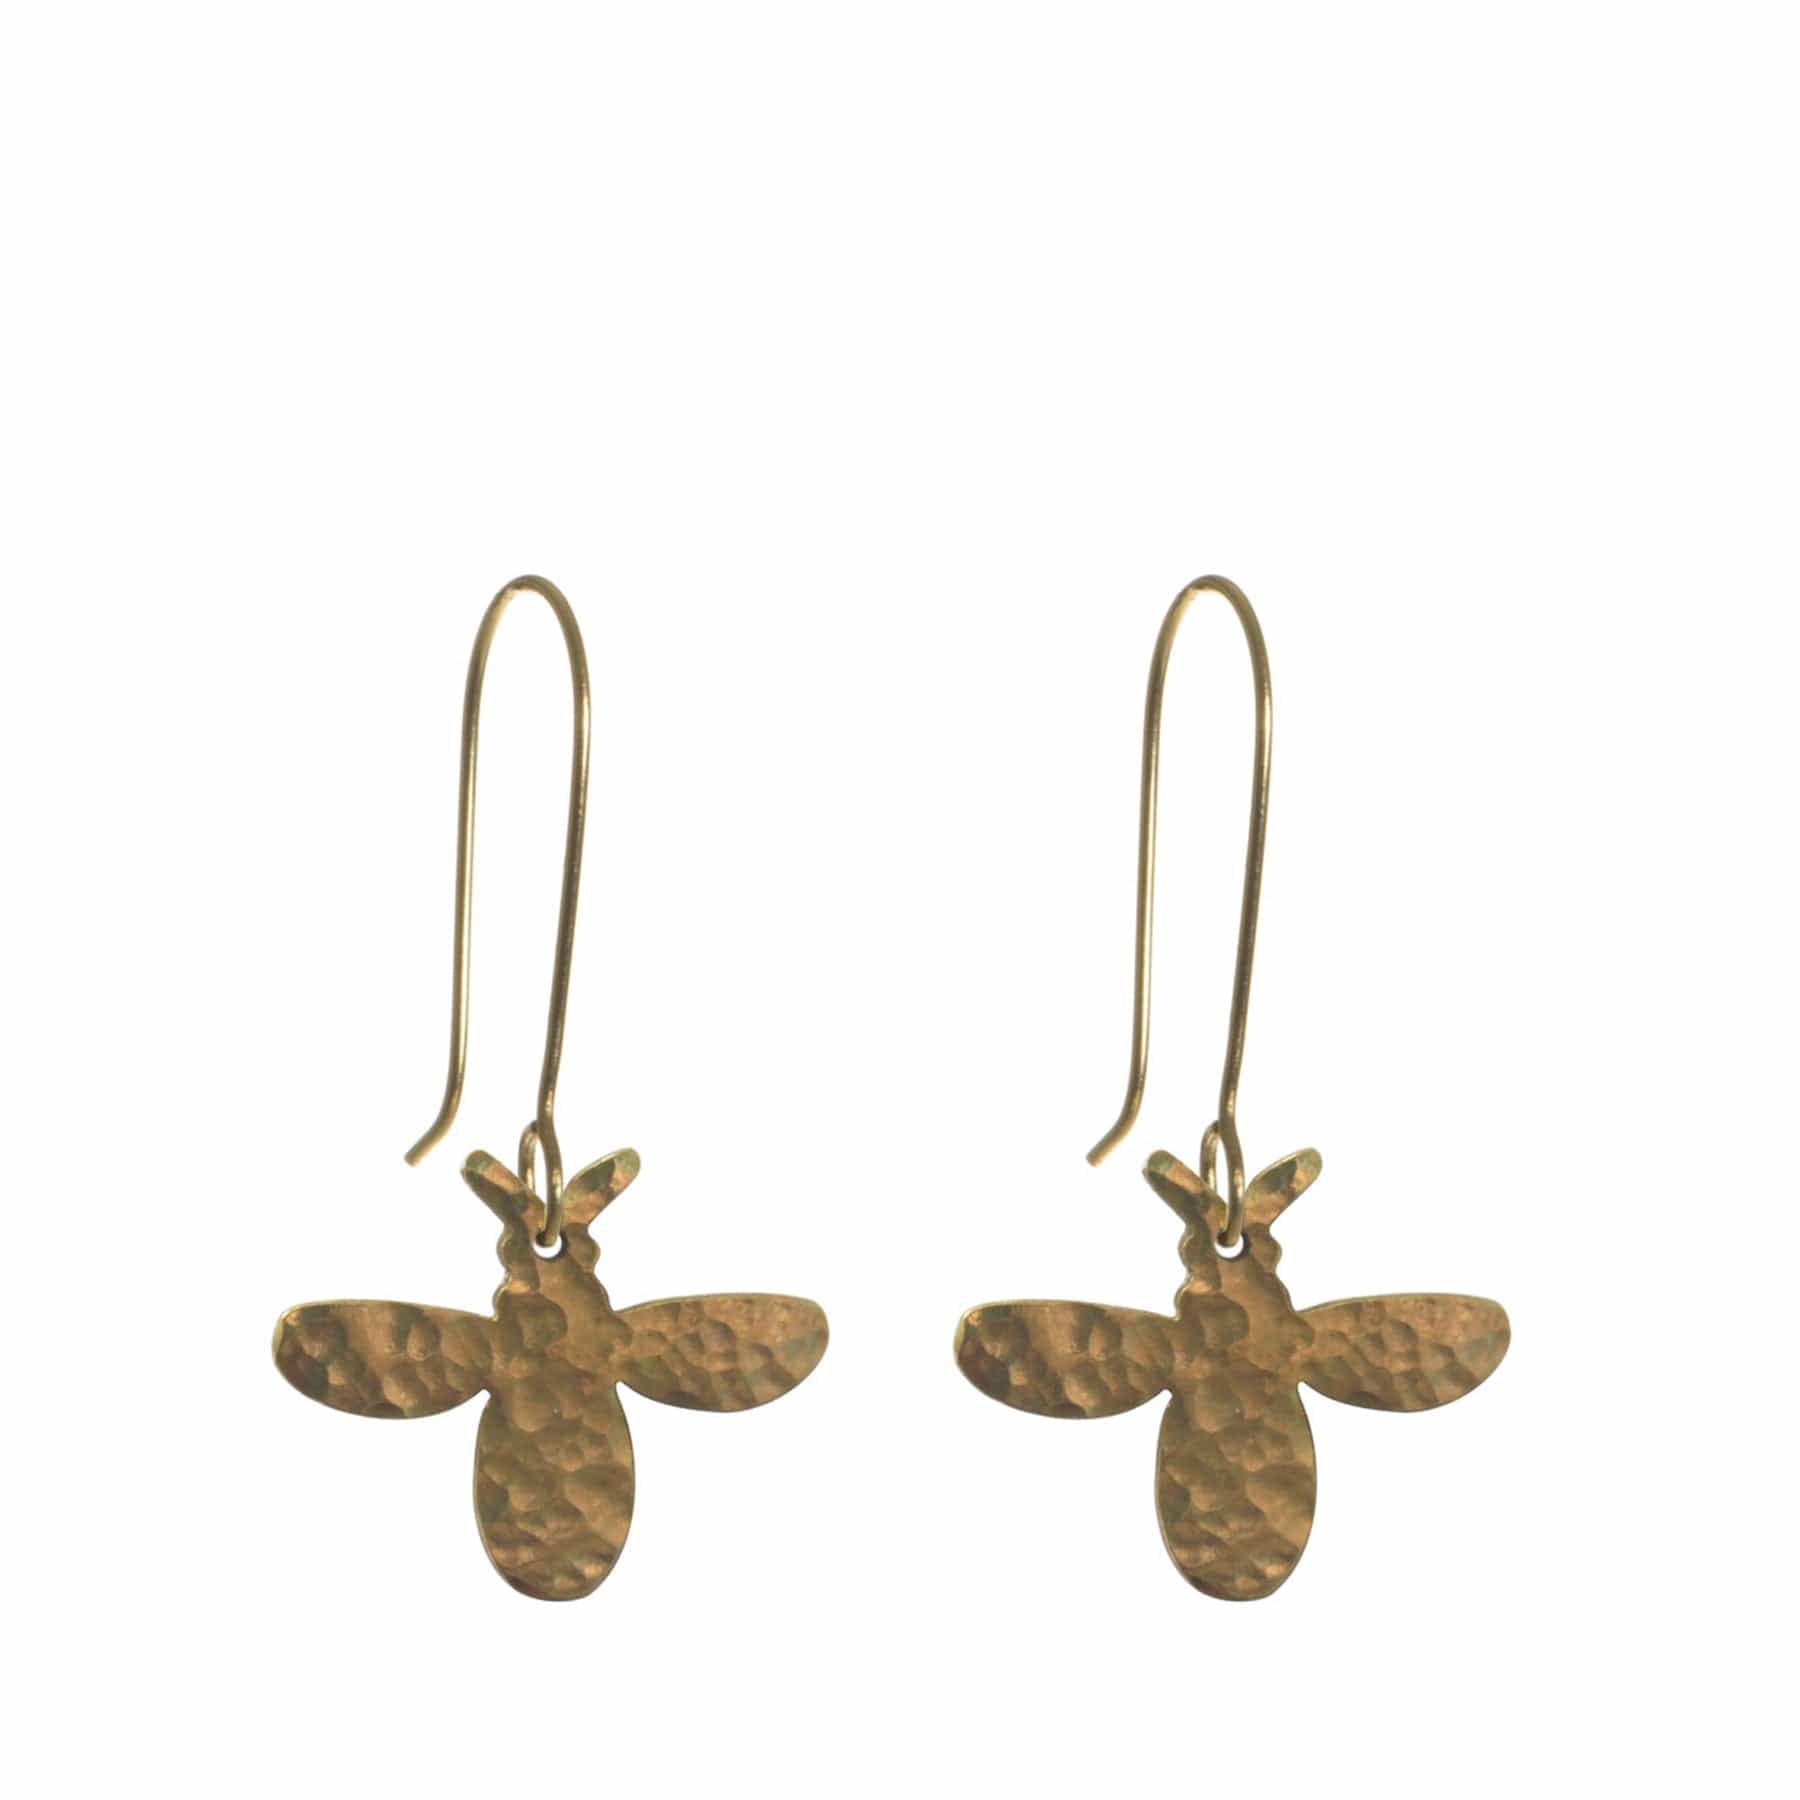 Hammered bee earrings